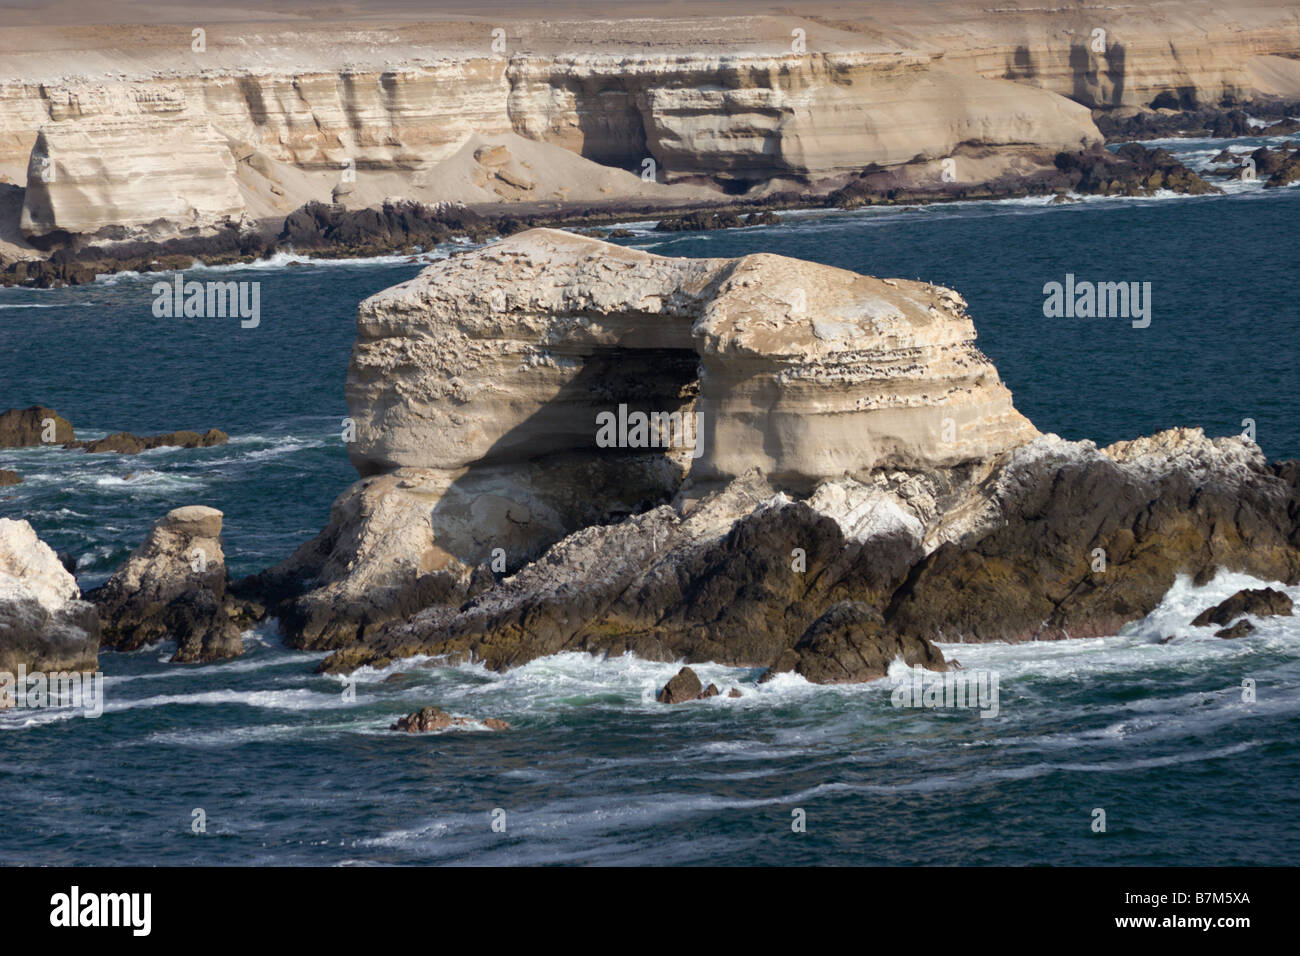 antofagasta Chile la portada rock formation ocean Stock Photo